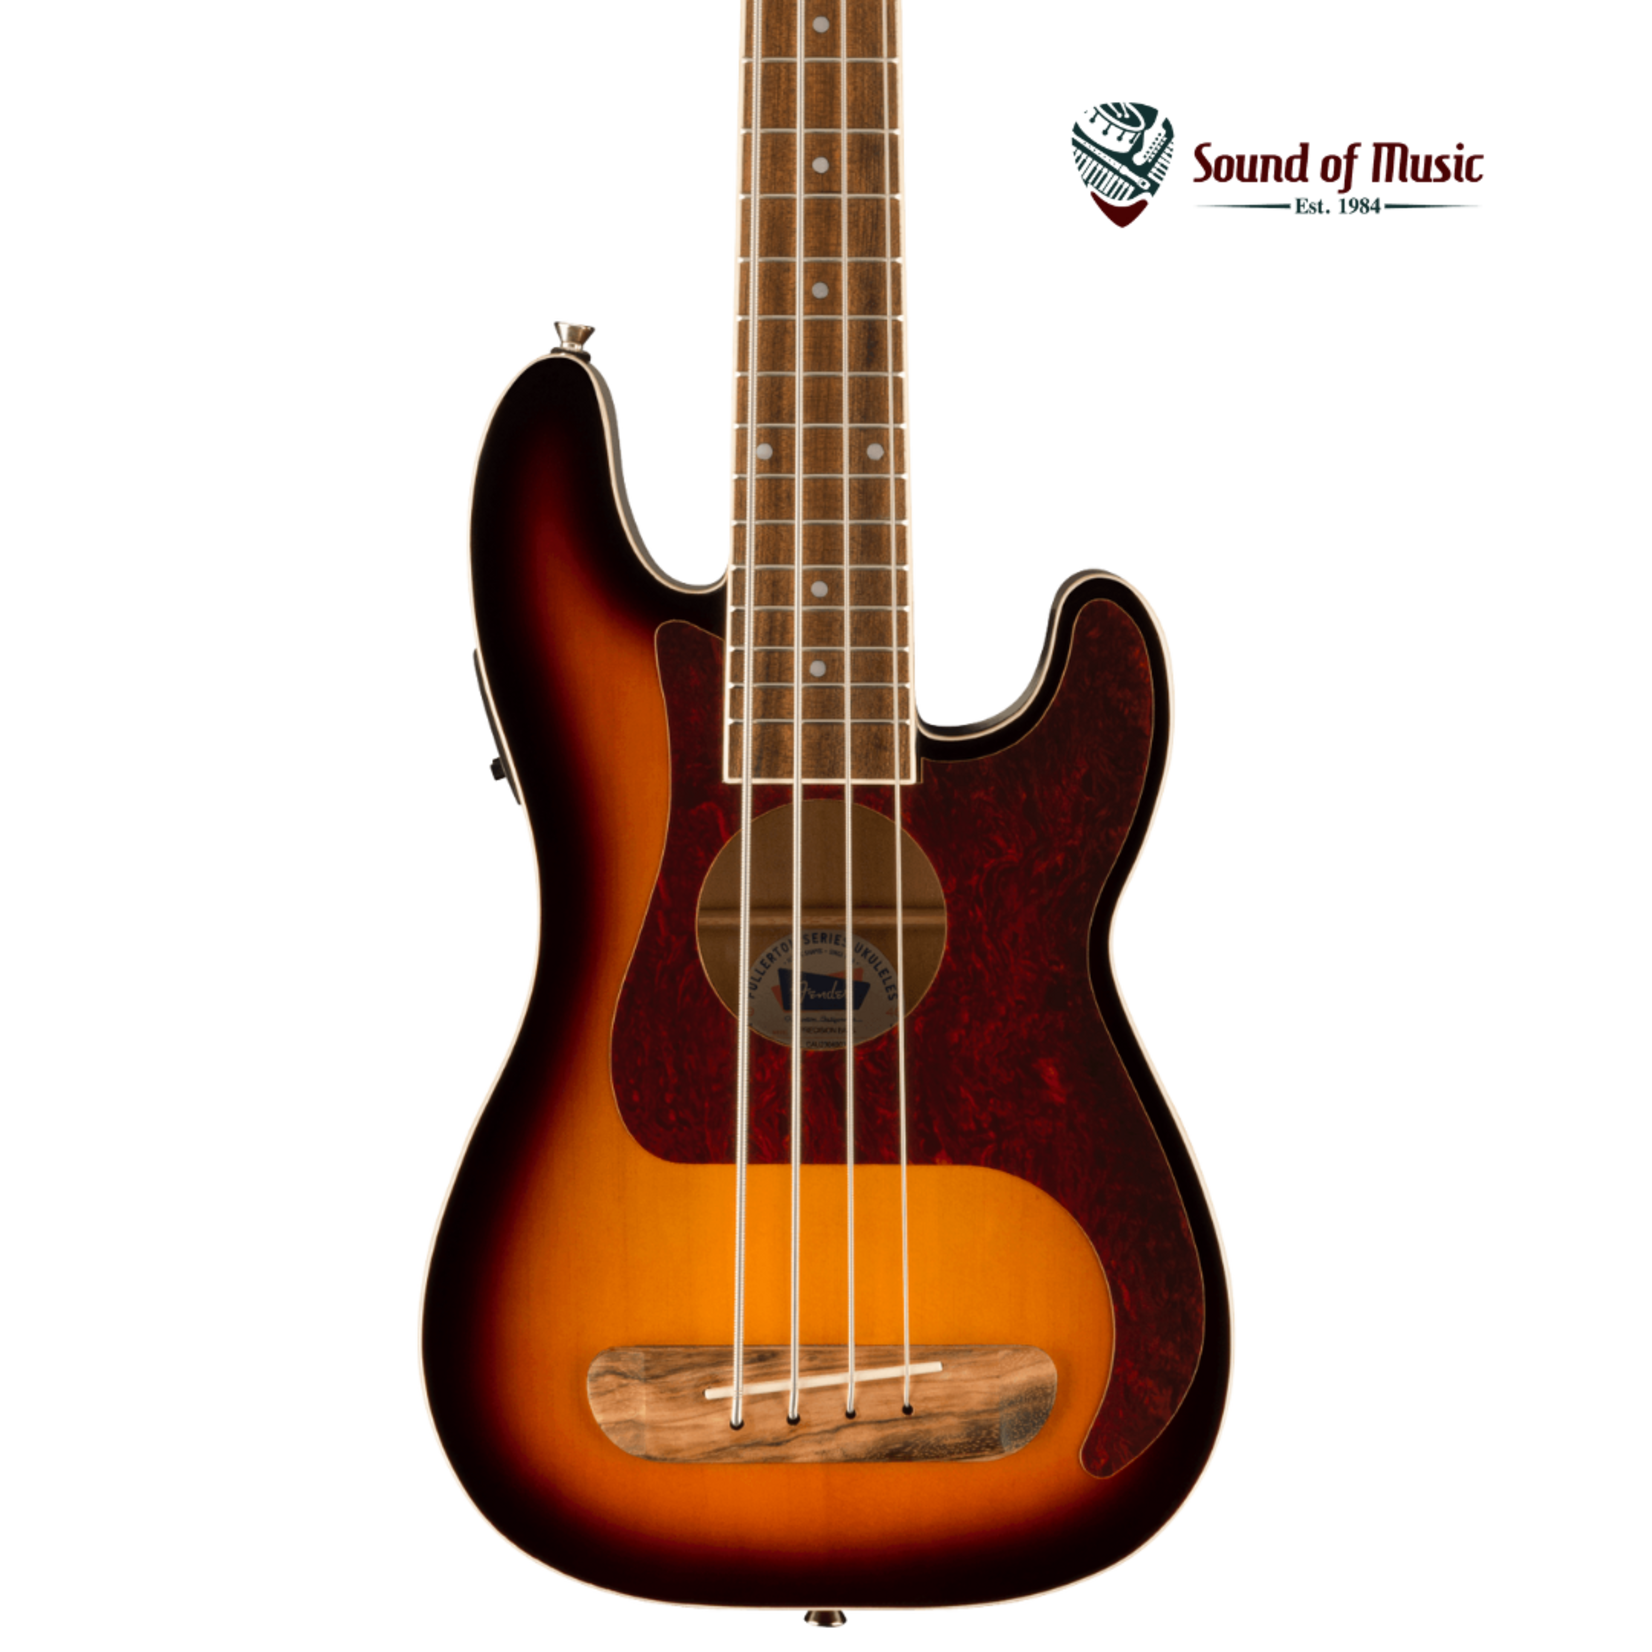 Fender Fullerton Precision Bass Uke, Walnut Fingerboard, Tortoiseshell Pickguard - 3-Color Sunburst